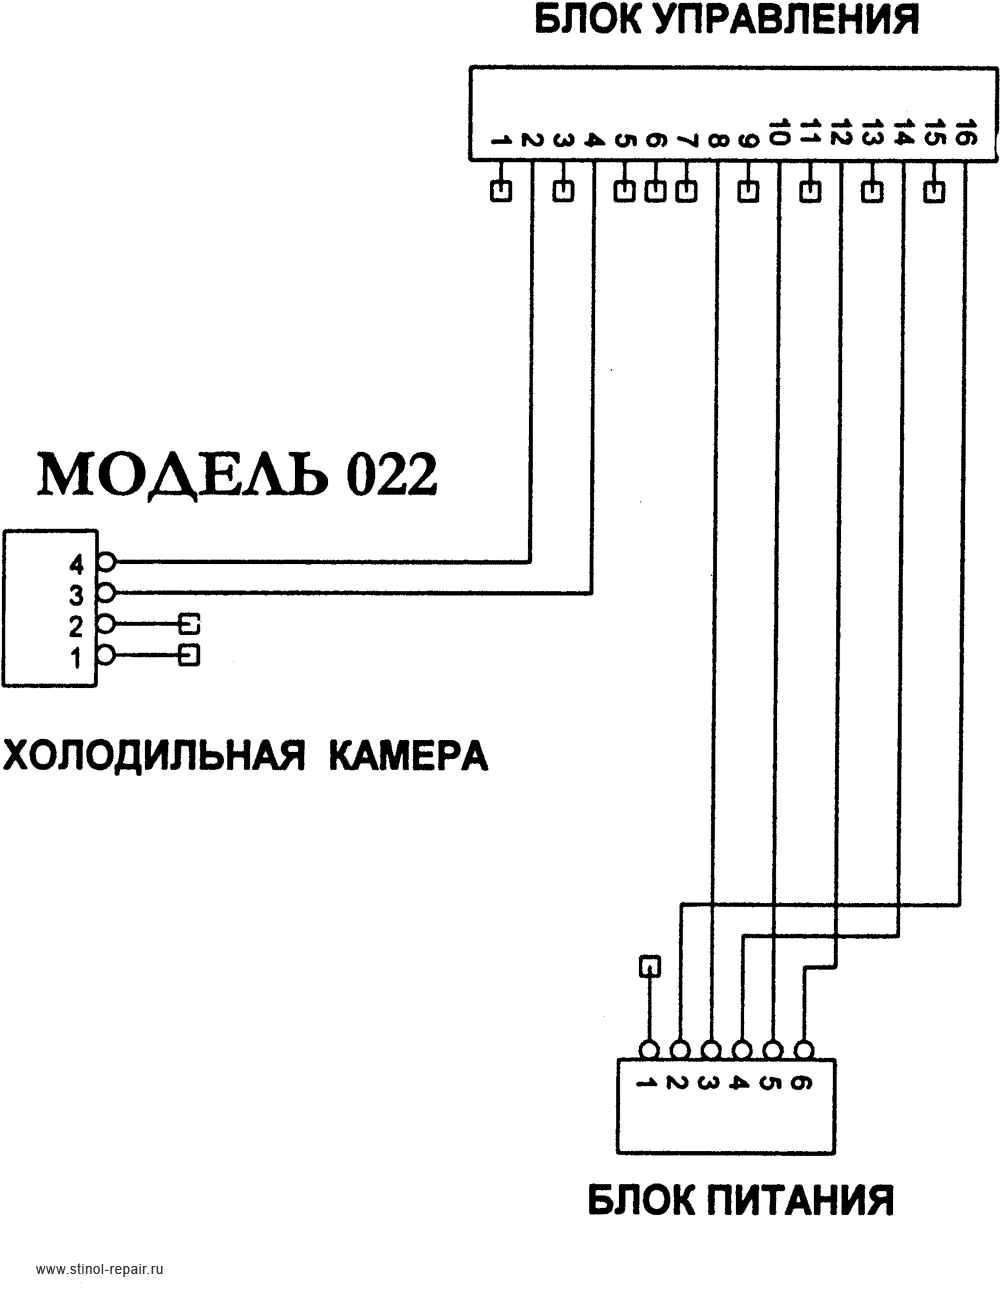 Упрощенная схема соединений холодильника Стинол-022.